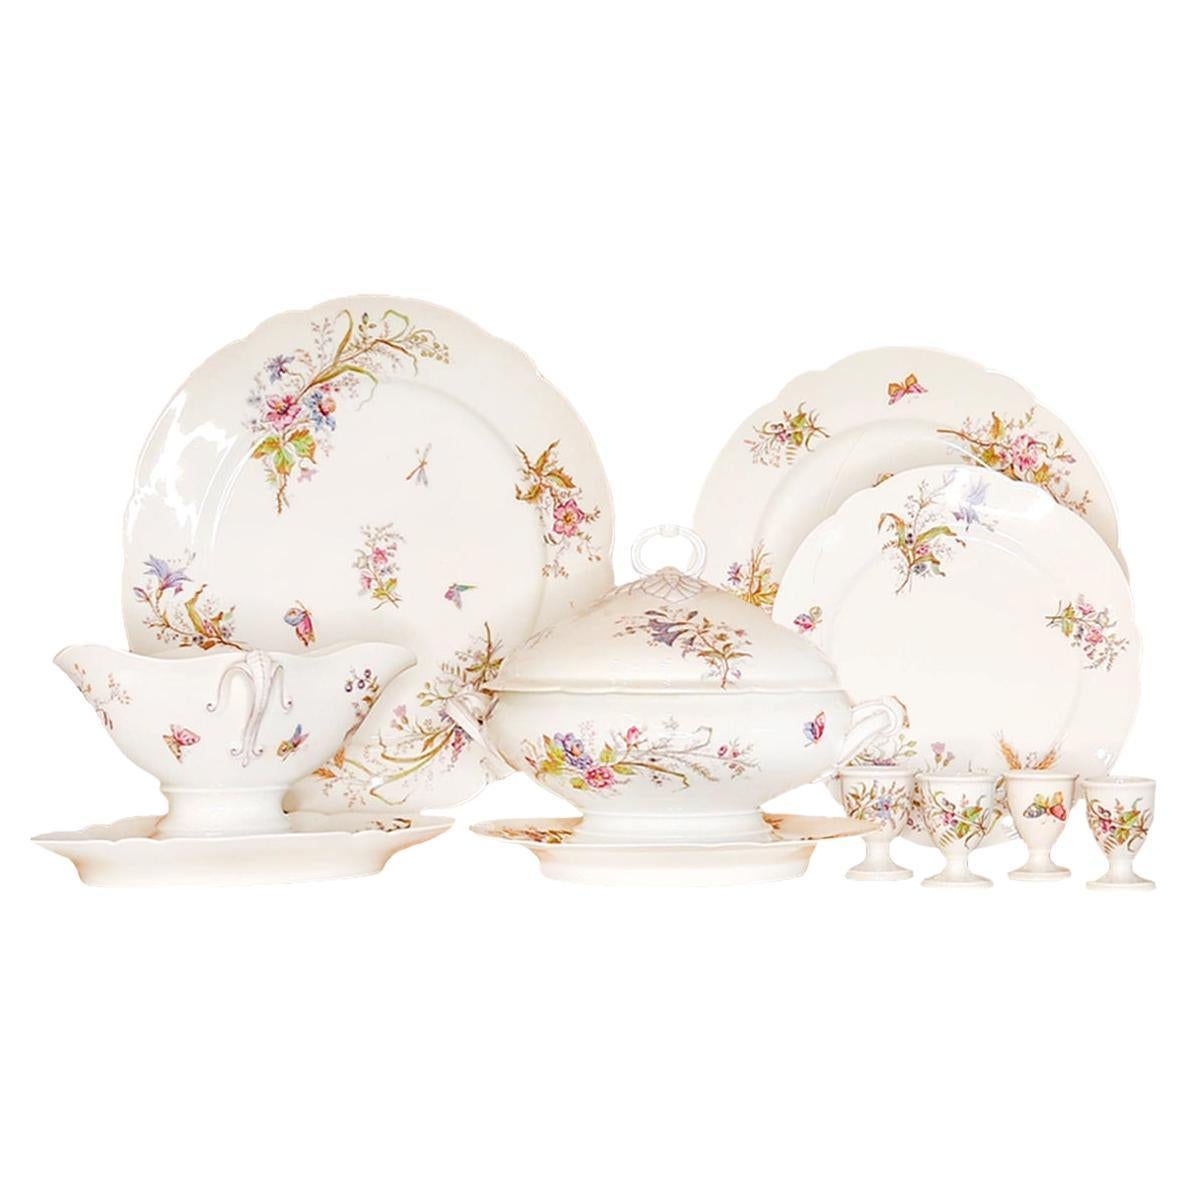 Set of Pilivuyt Porcelain Tableware For Sale